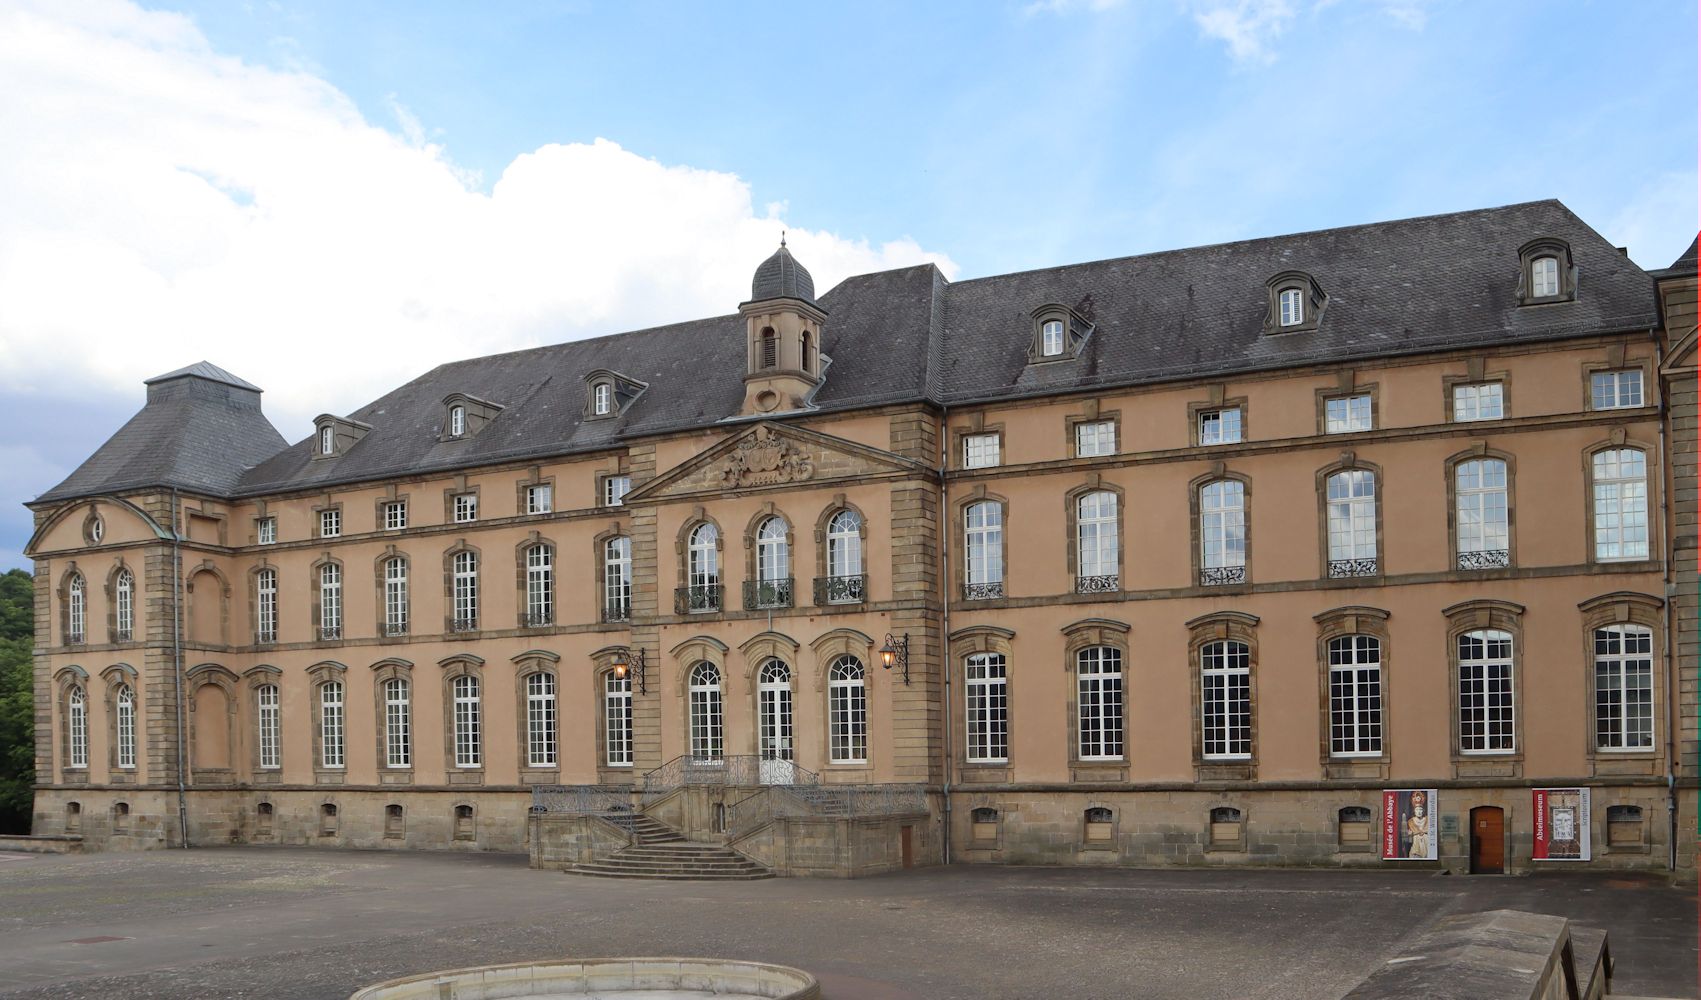 ehemalige Reichsabtei Echternach, heute ein Gymnasium